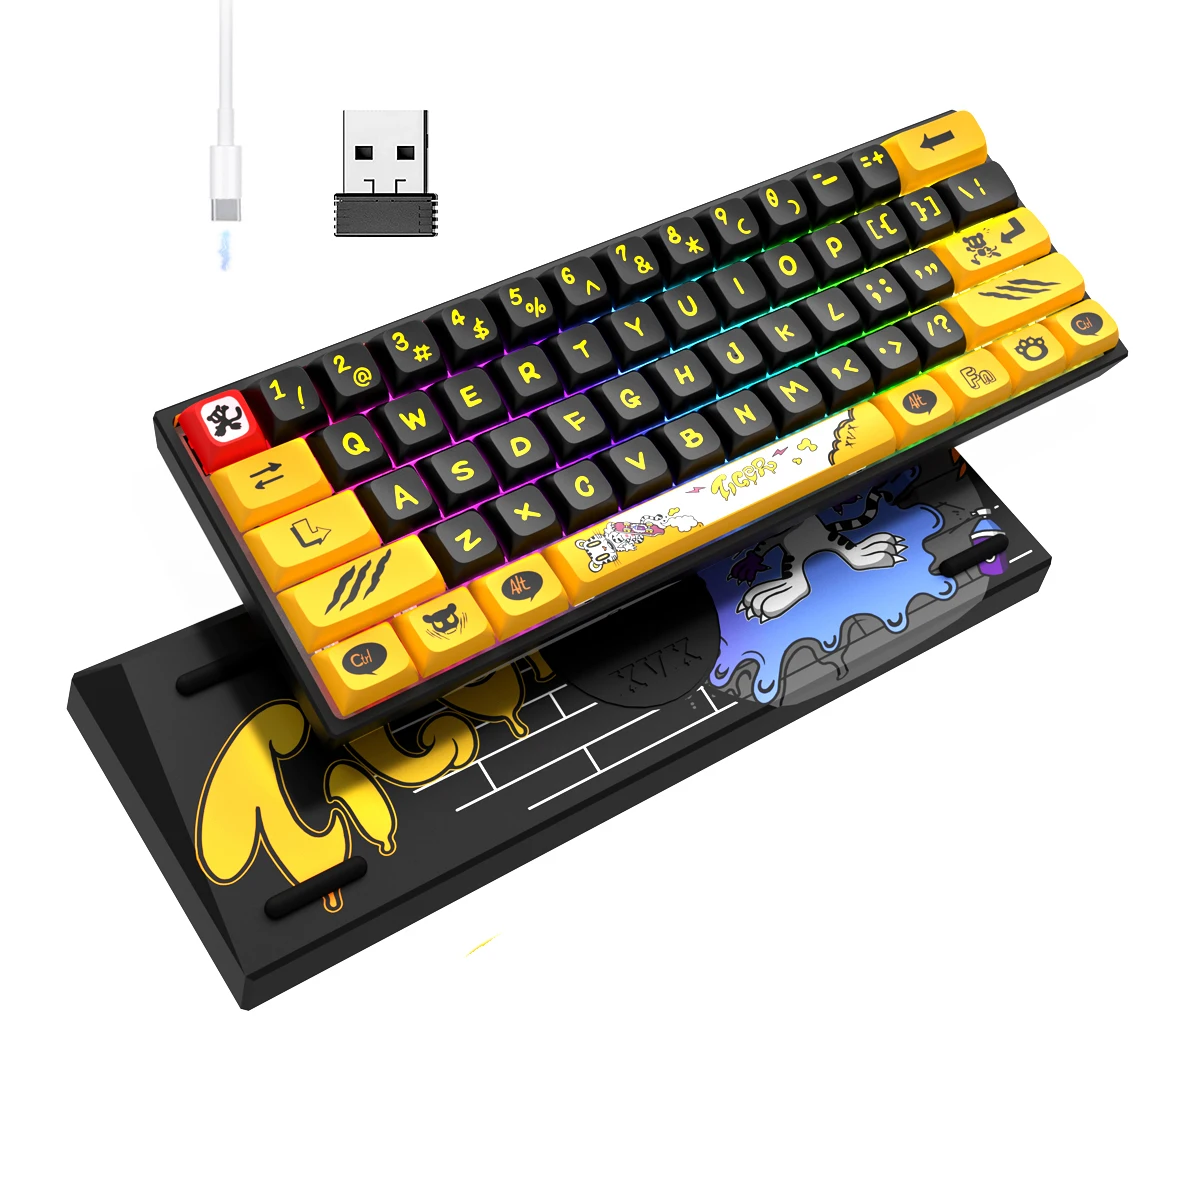 

Клавиатура Womier M61 M84 с тигровой раскладкой, 60% клавиатура Механическая Беспроводная ультра-компактная игровая клавиатура с RGB подсветкой для ПК геймера Gateron